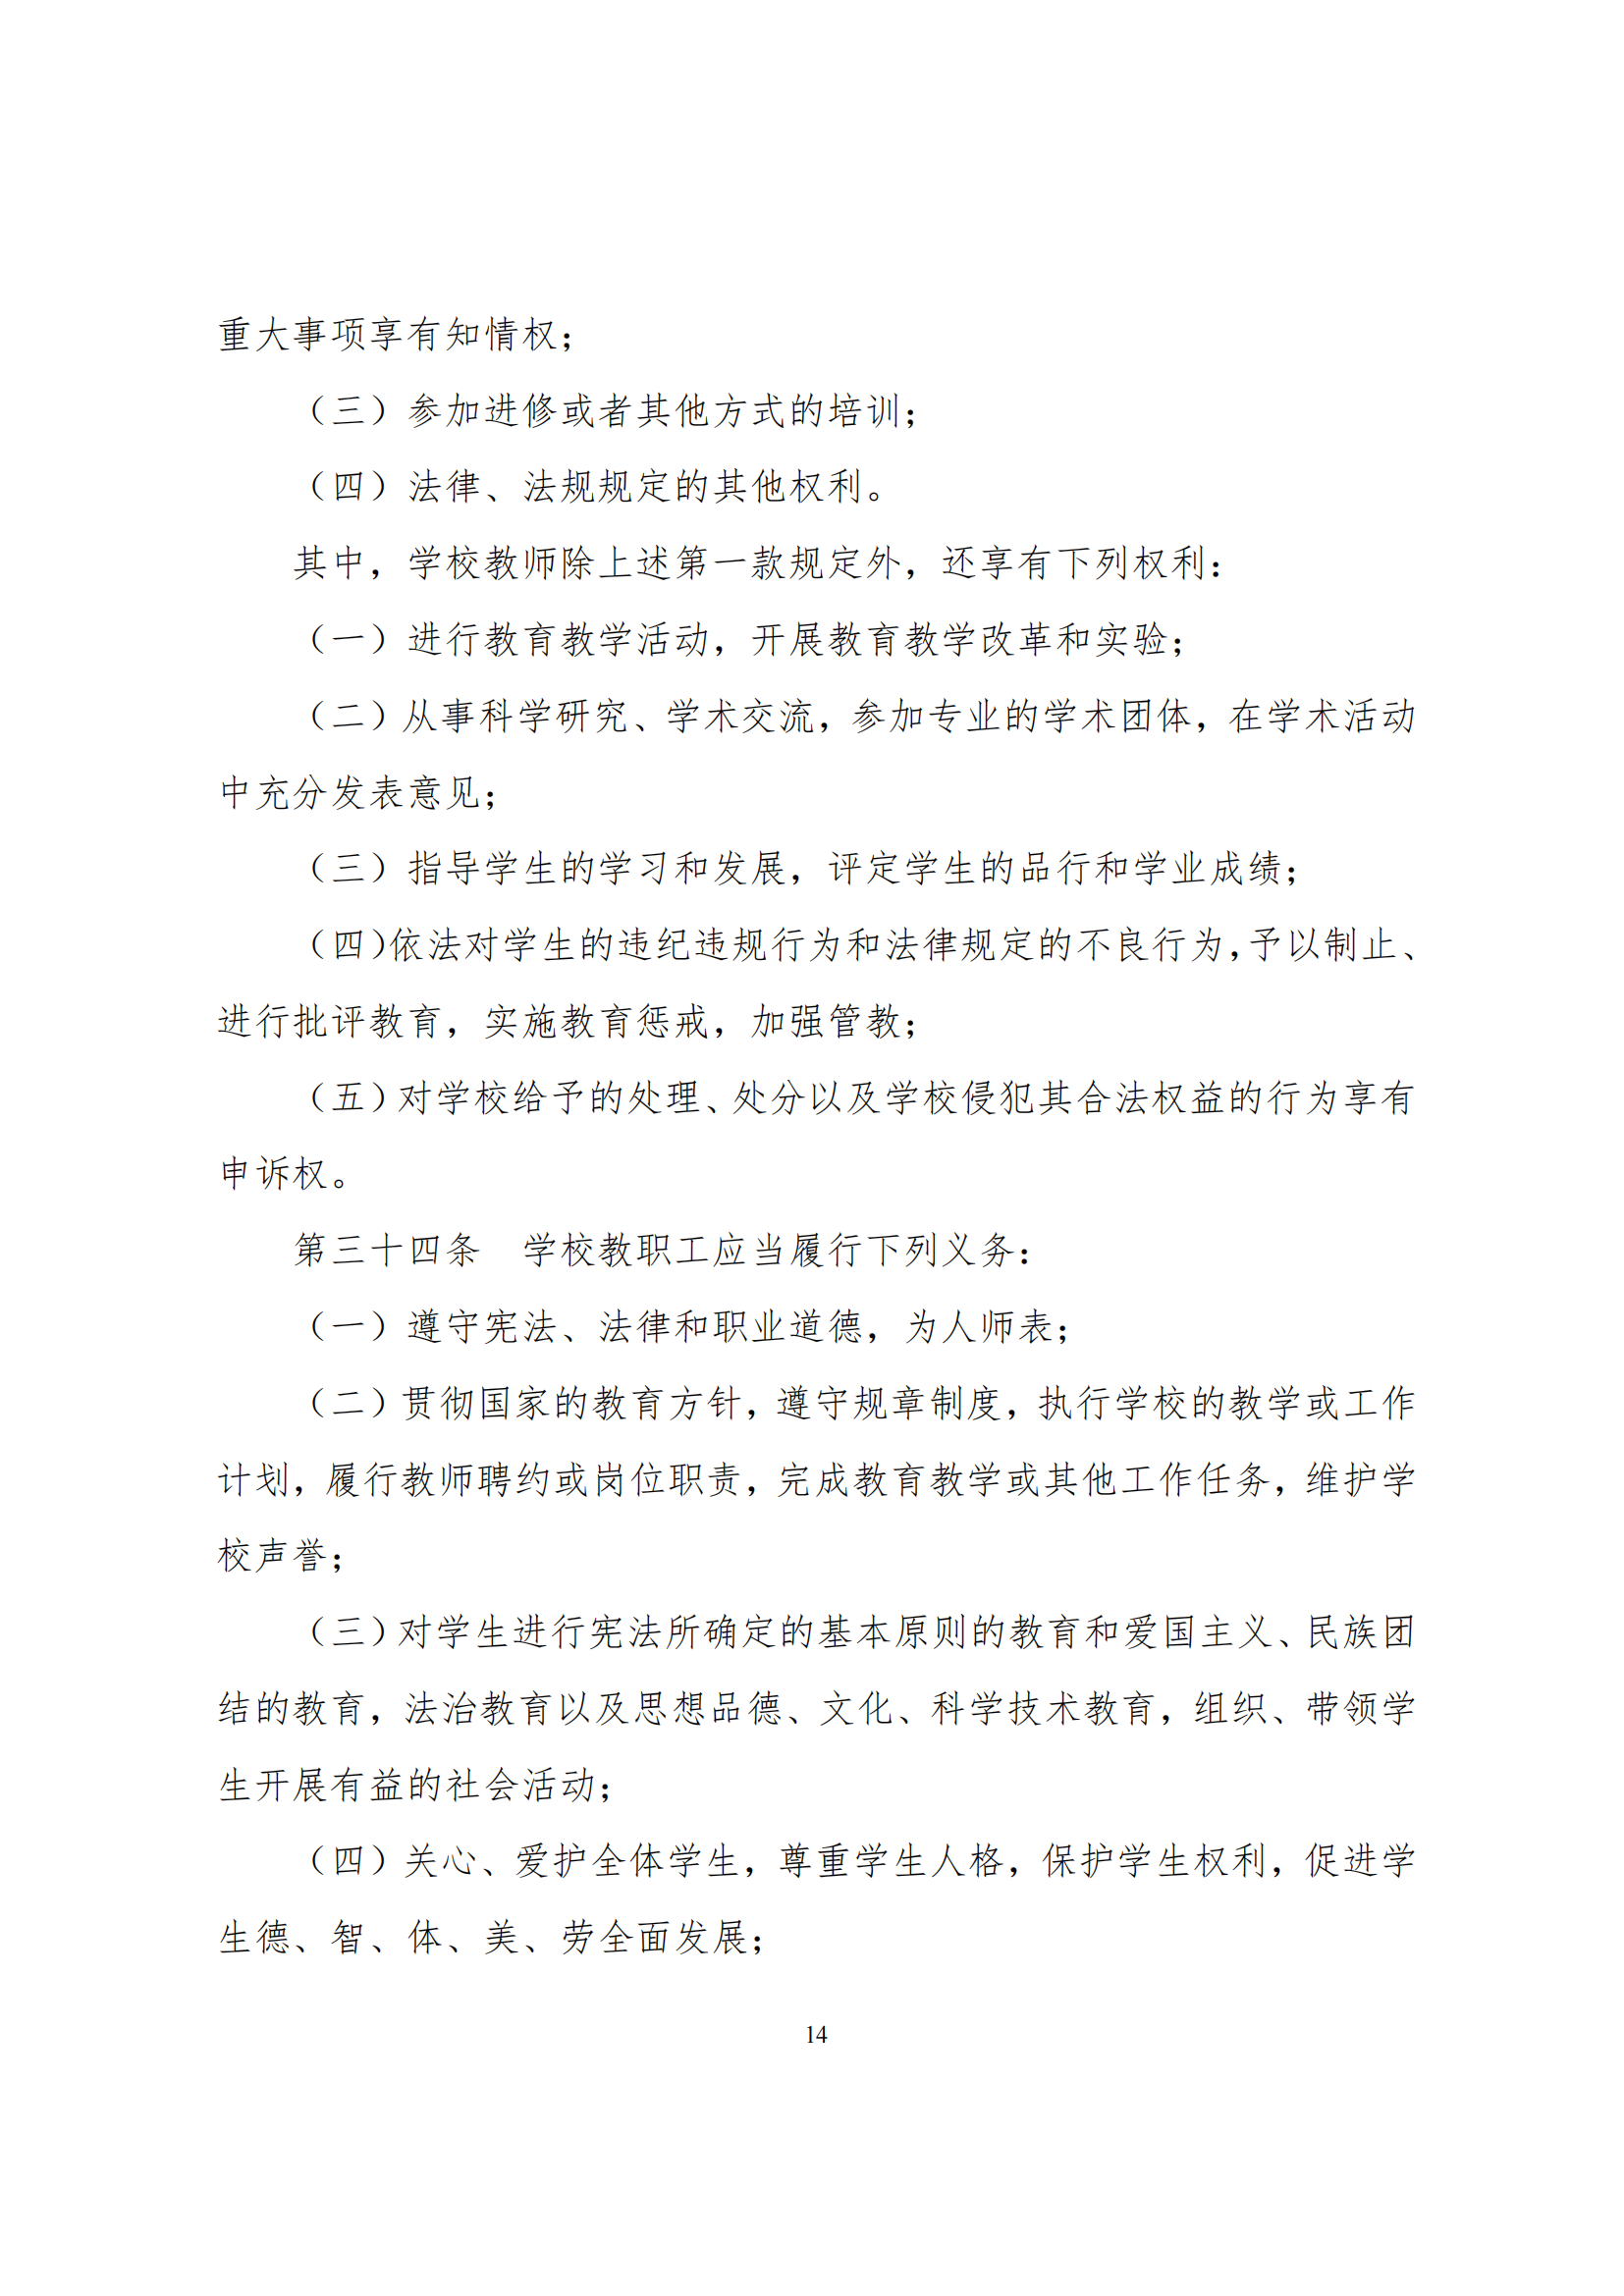 上海市徐汇区求知小学学校章程（提交稿）_13.png